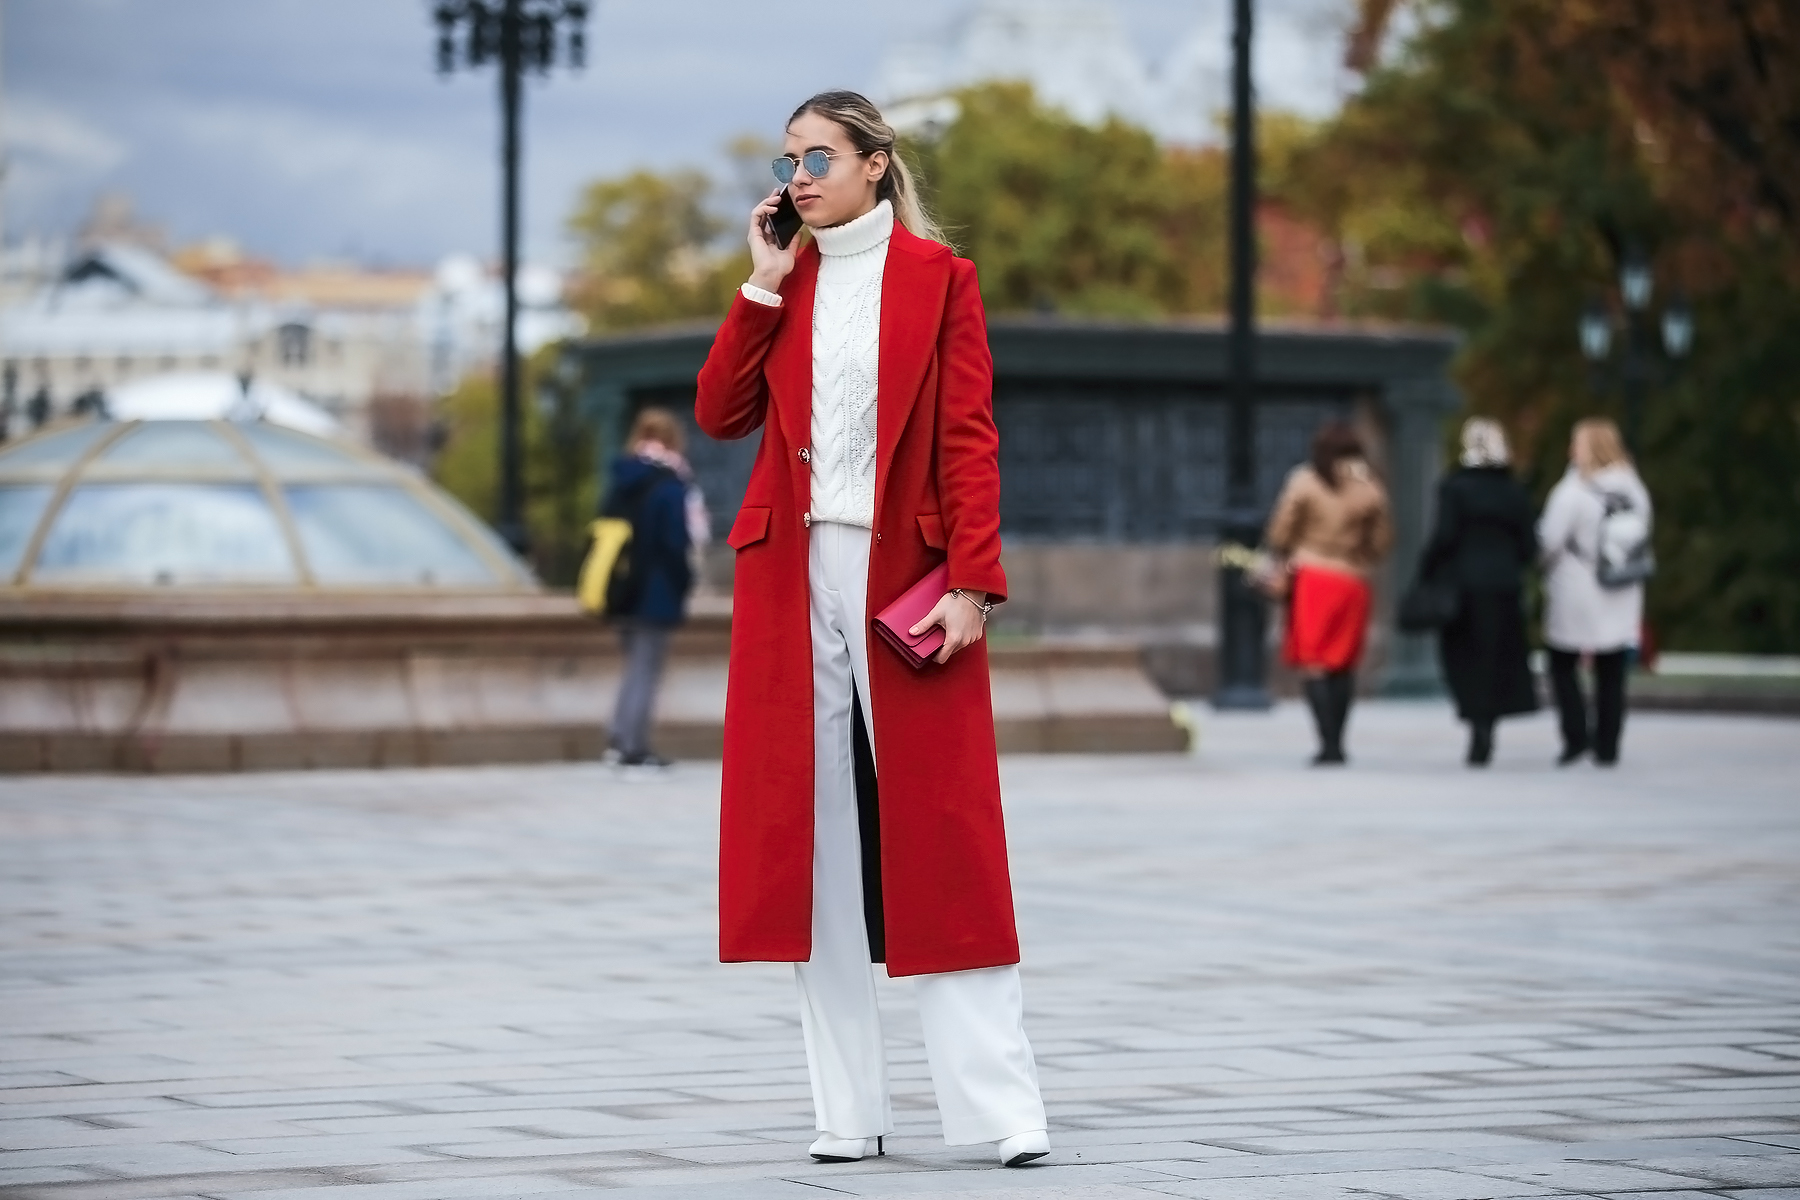 Юрод вый пальт цо. Красное пальто. Красное пальто в моде. Женщина в Красном пальто. Стритстайл Россия.